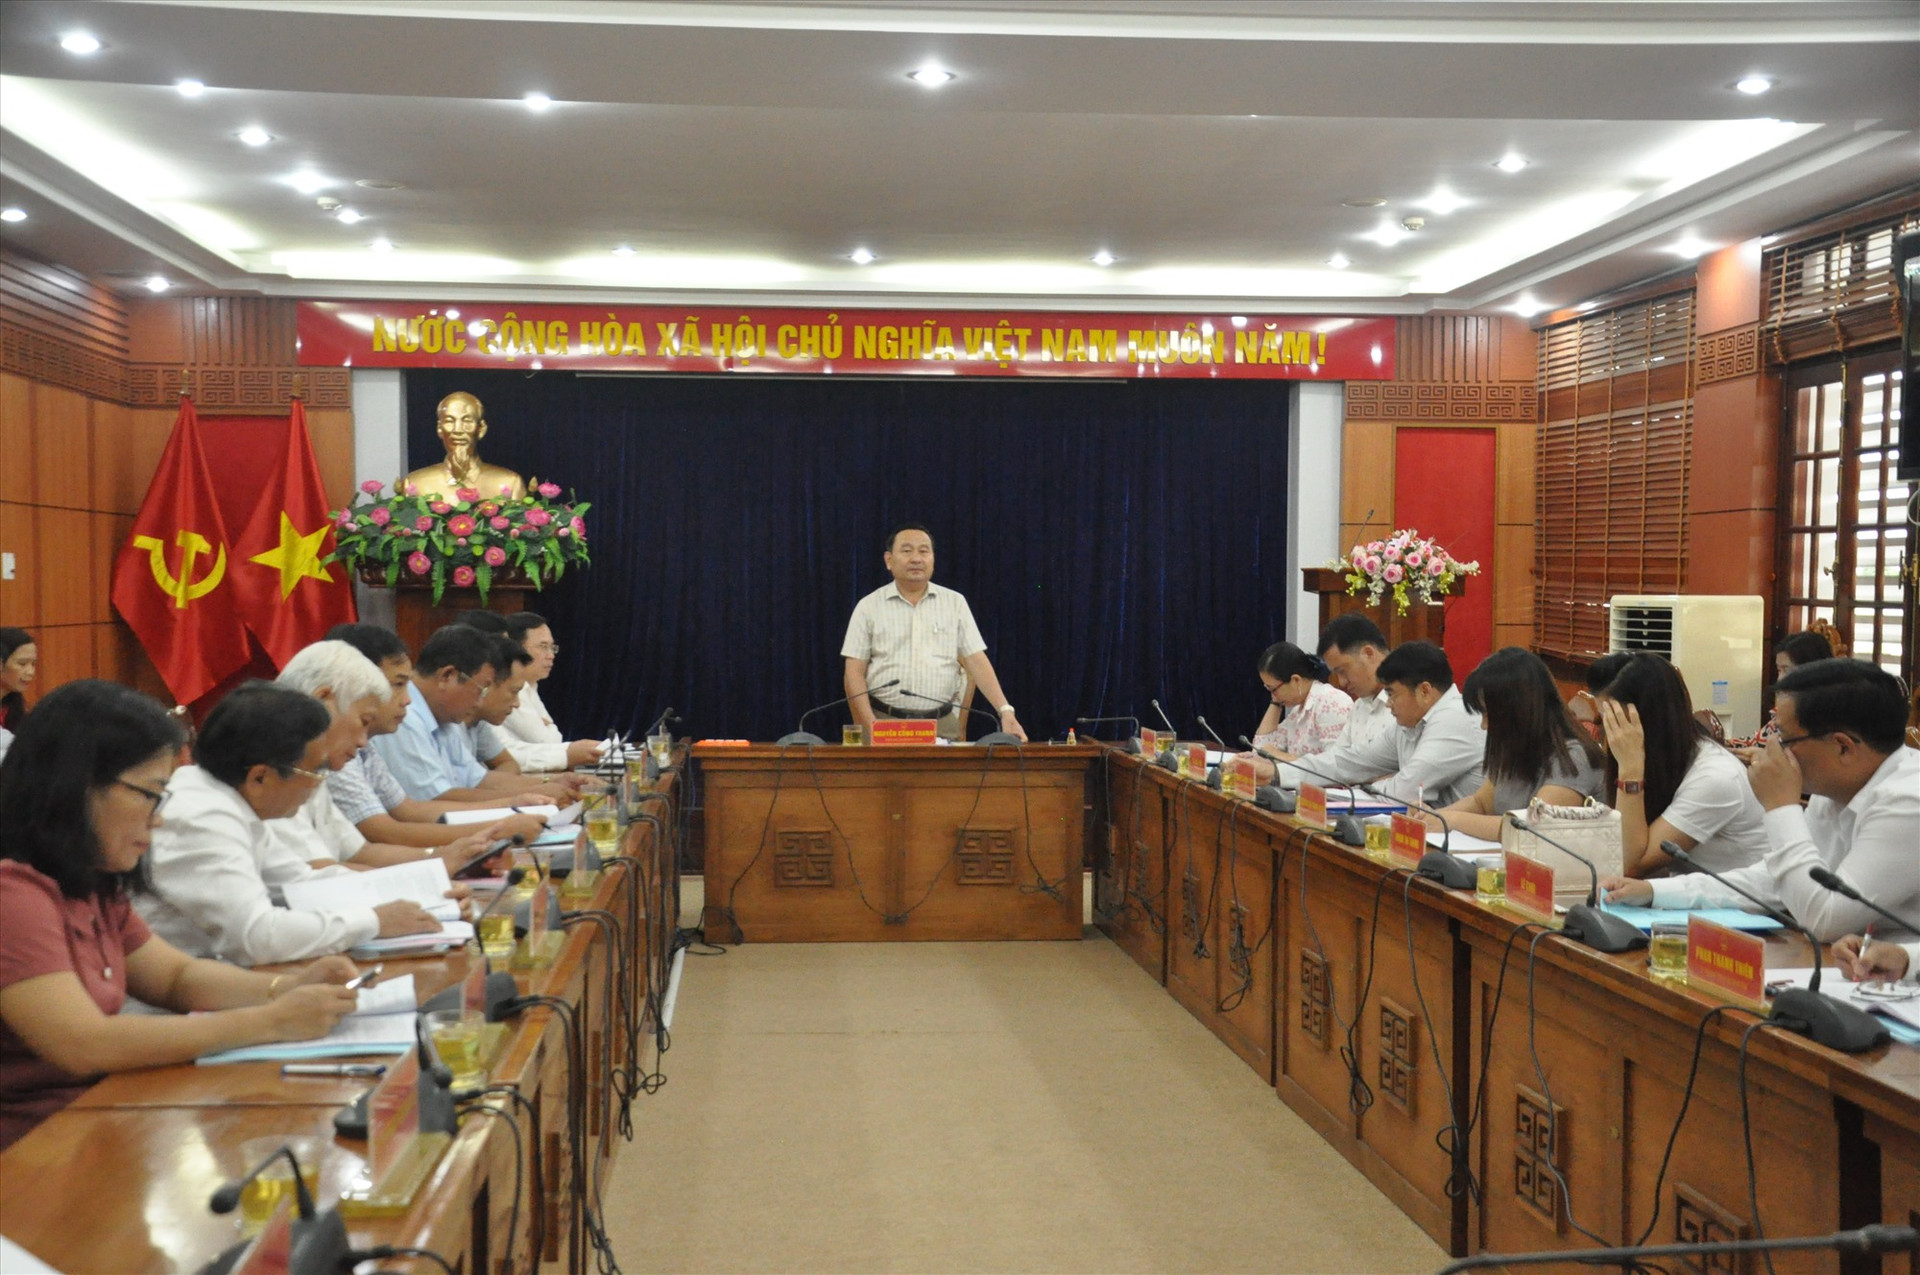 Phó Chủ tịch HĐND tỉnh Nguyễn Công Thanh chủ trì buổi làm việc. Ảnh: T.V